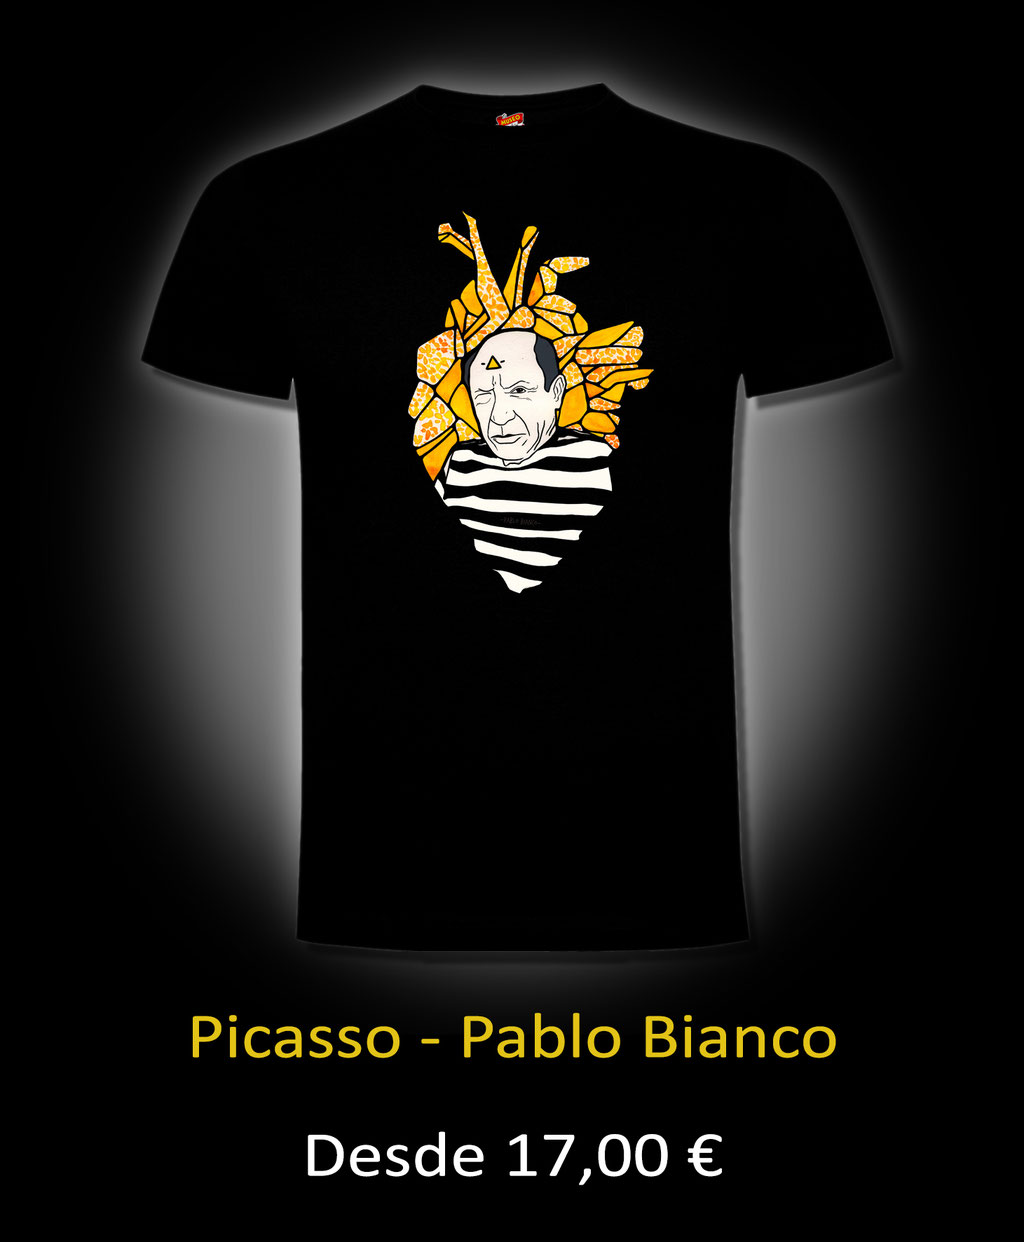 Picasso - Pablo Blanco